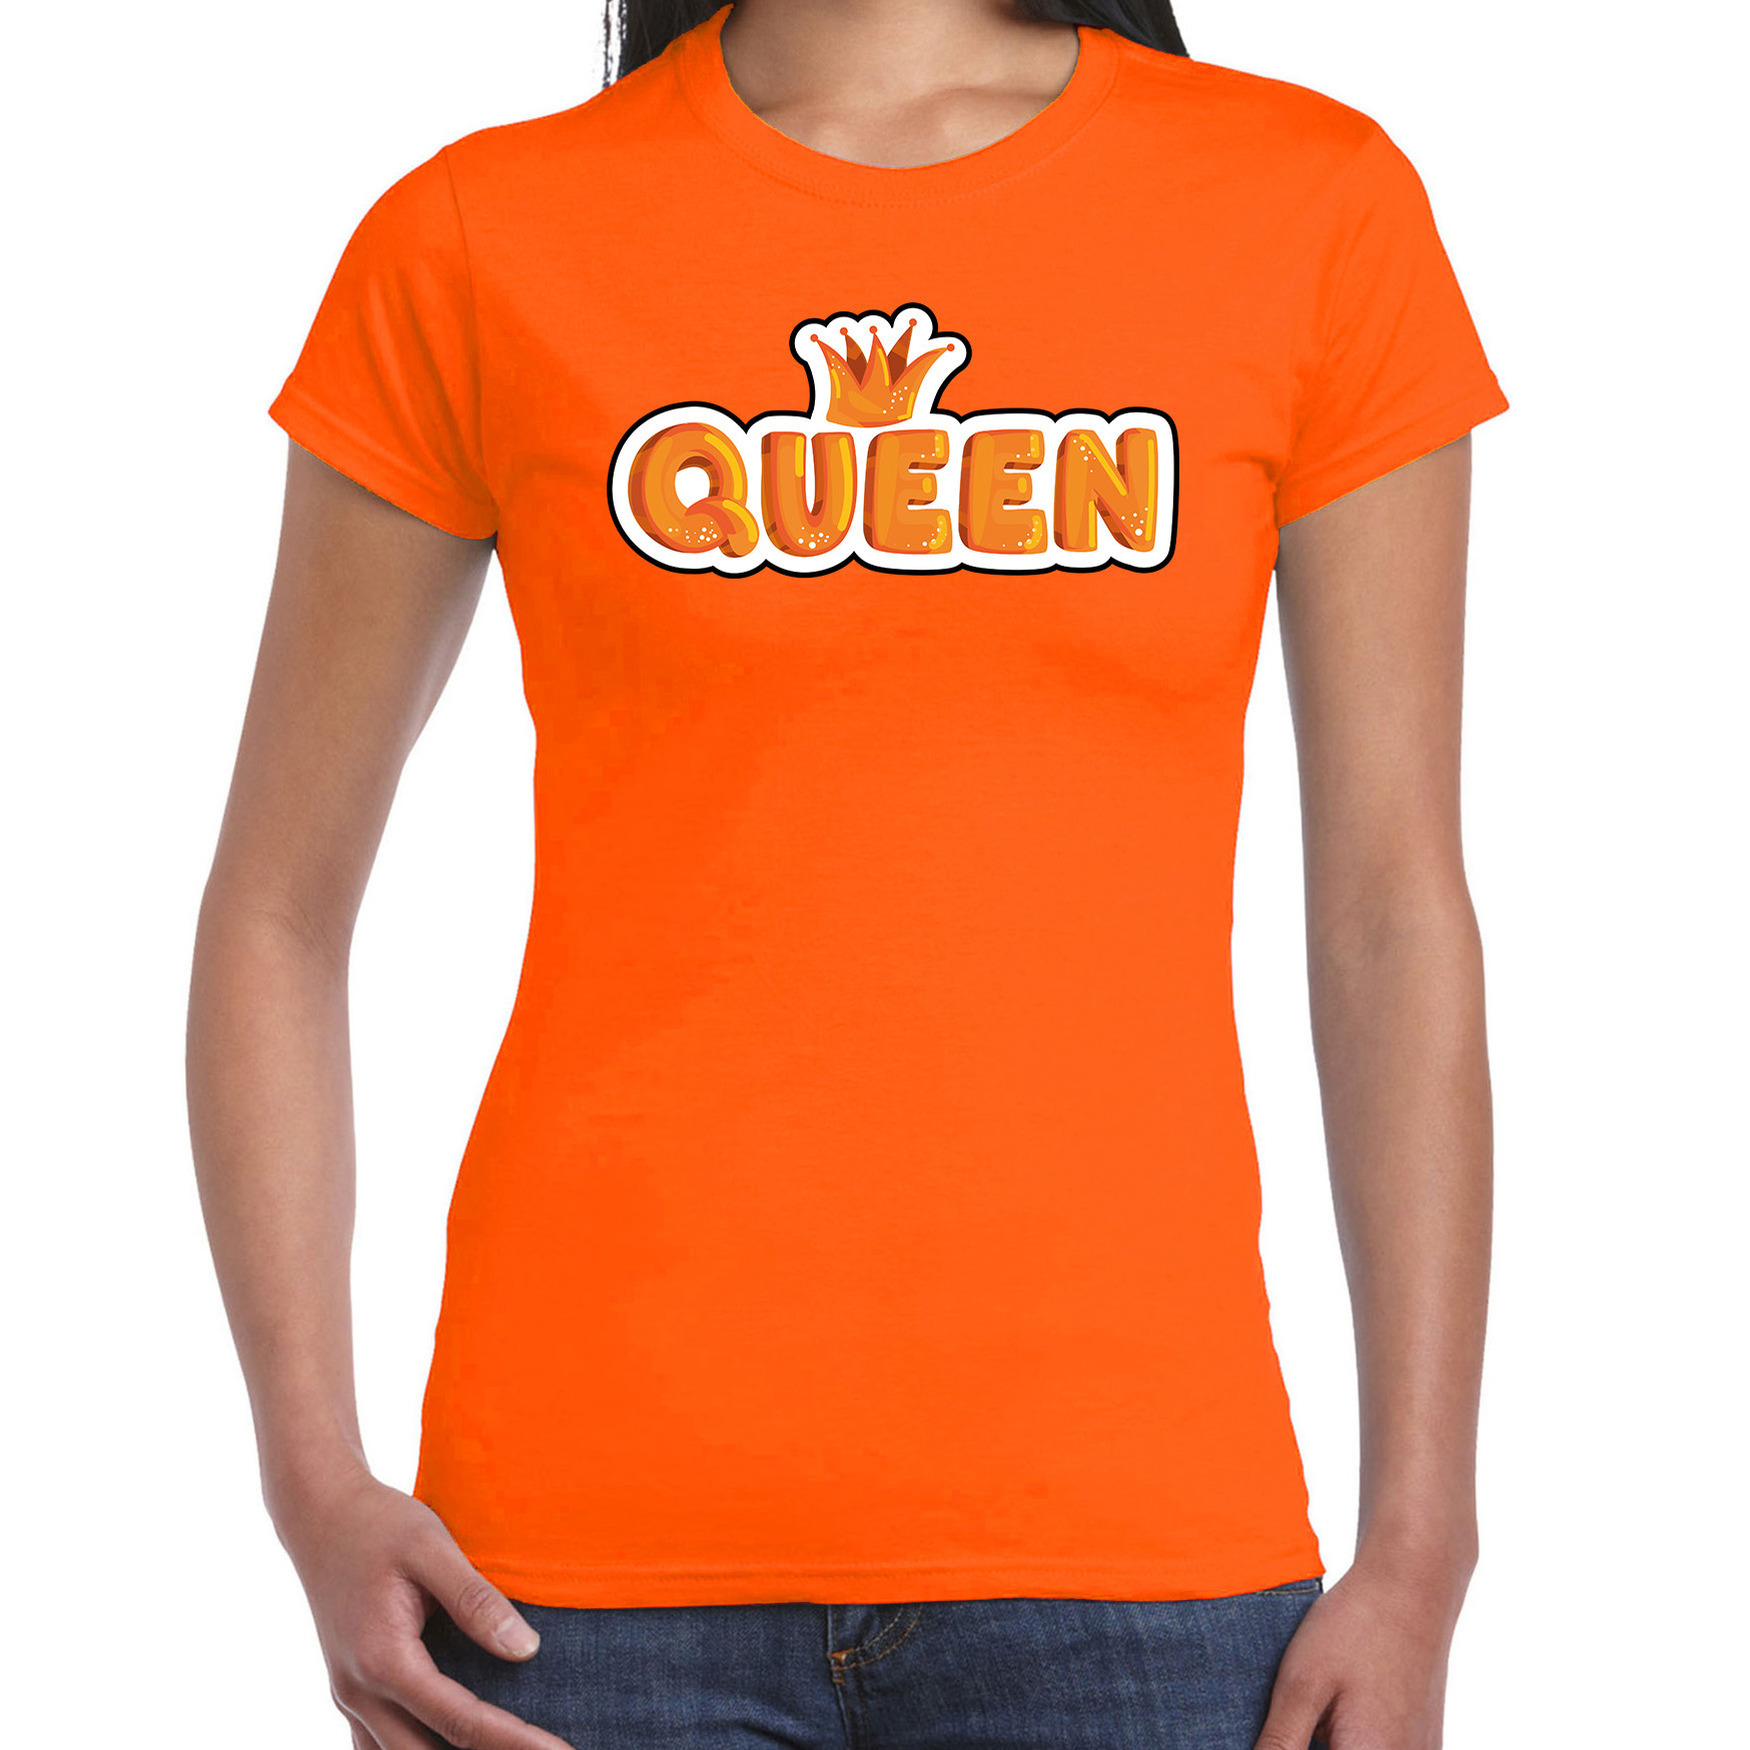 Queen in cartoon letters t-shirt oranje voor dames - Koningsdag shirts